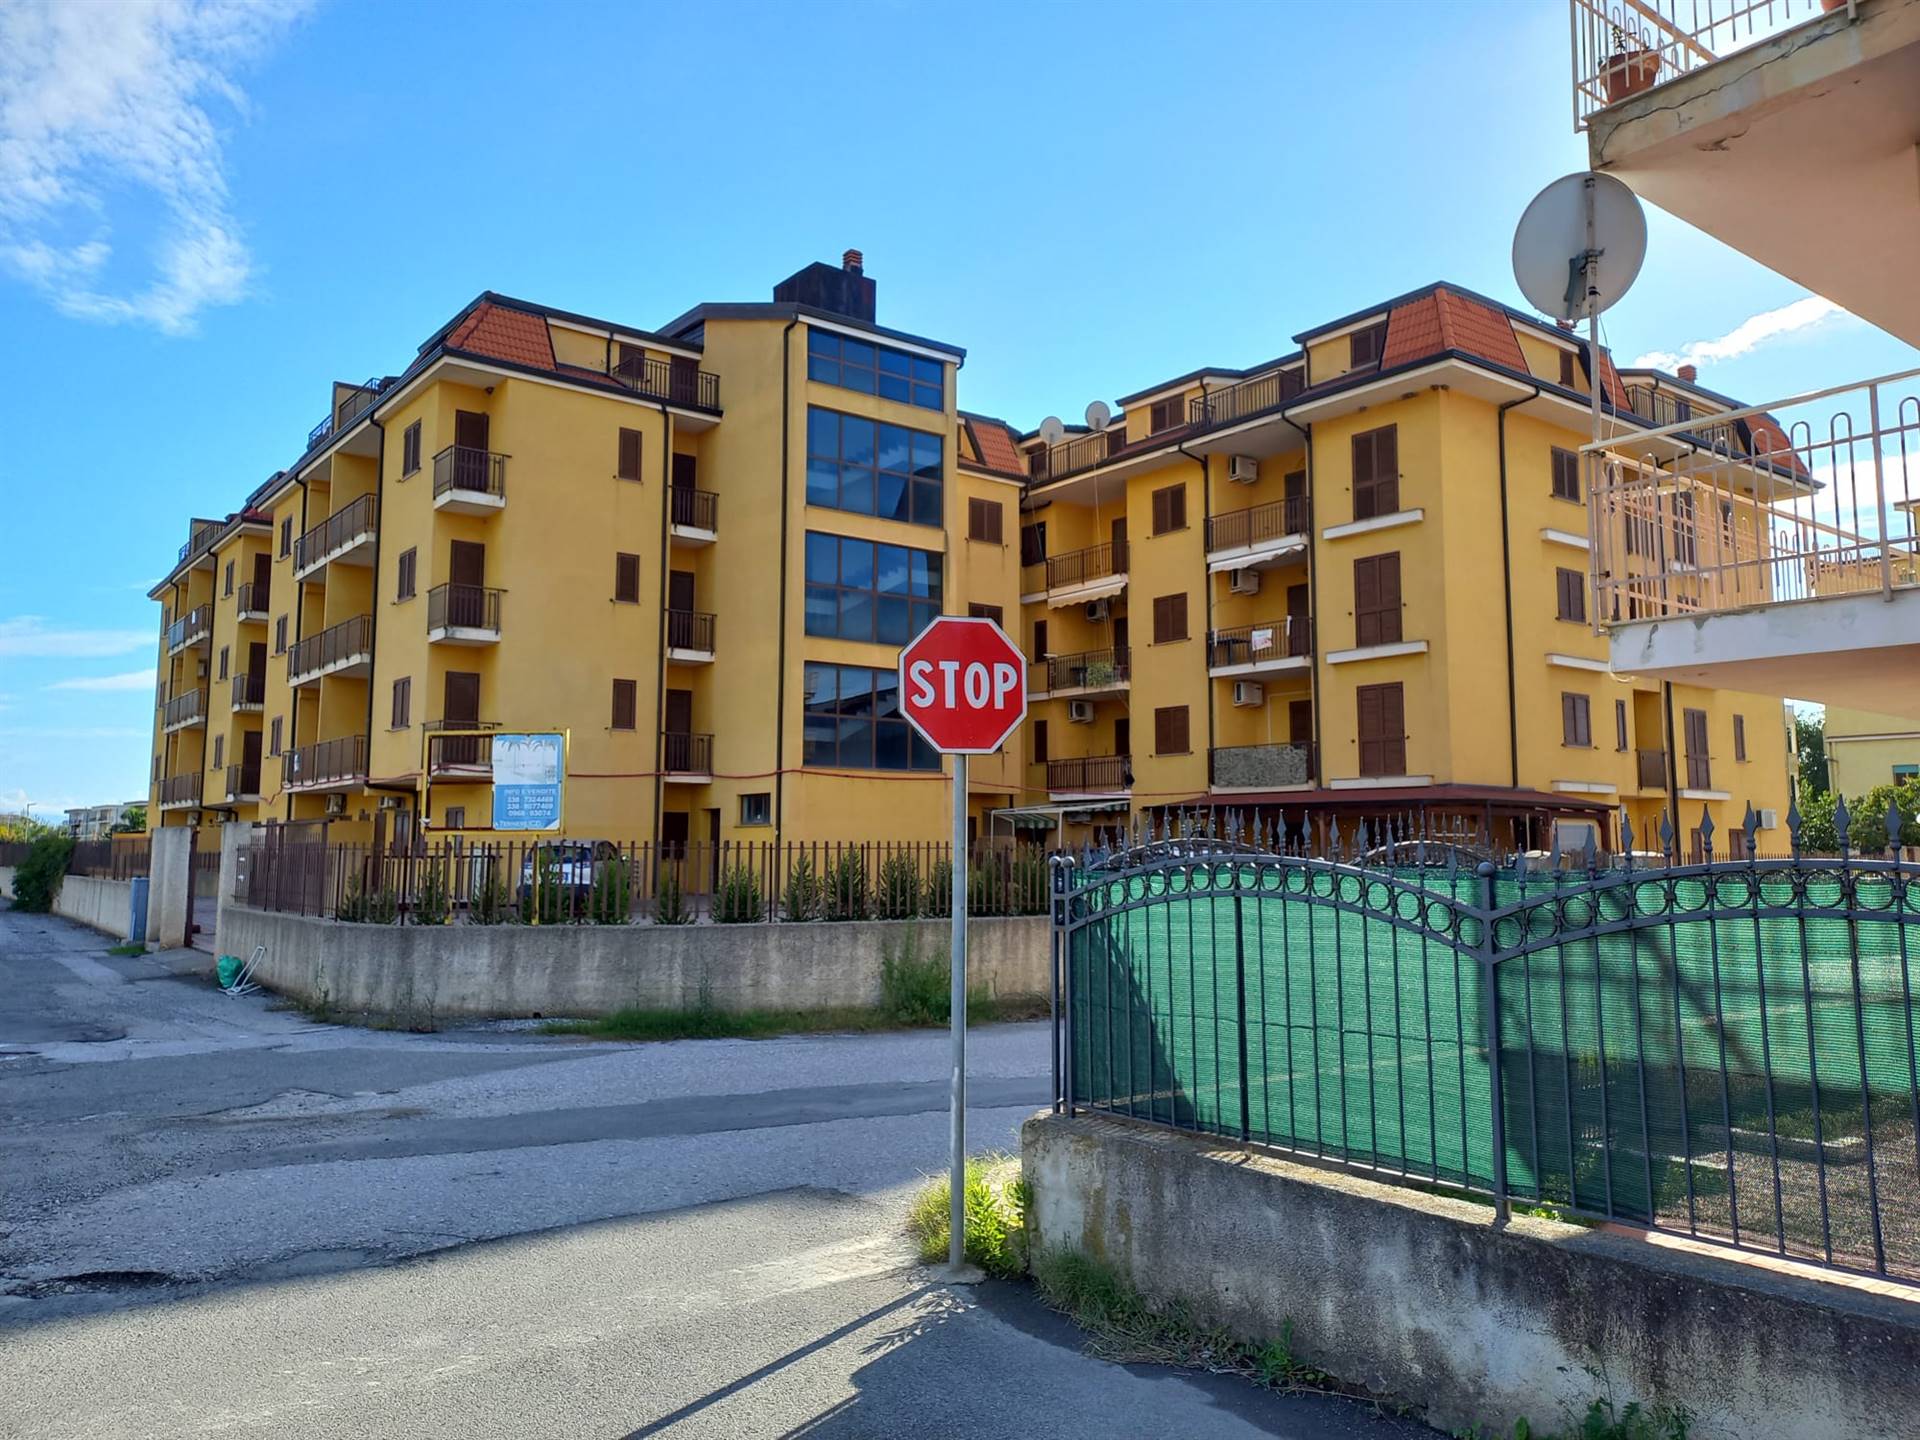 Appartamento in vendita a Nocera Terinese, 2 locali, zona Località: MARINA DI NOCERA TERINESE, prezzo € 60.000 | CambioCasa.it